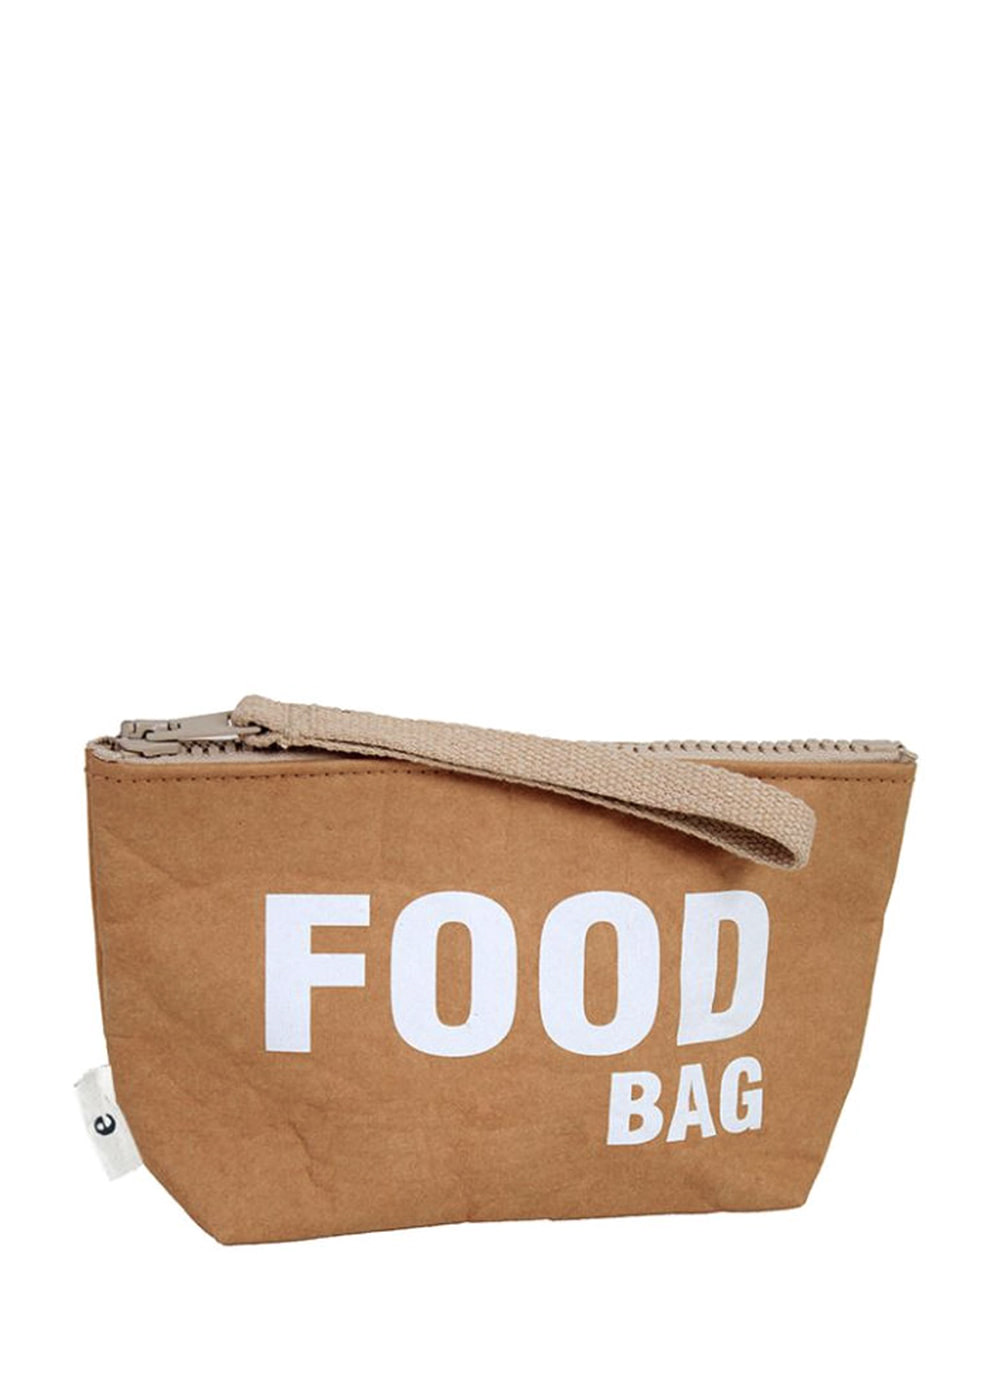 Food bag